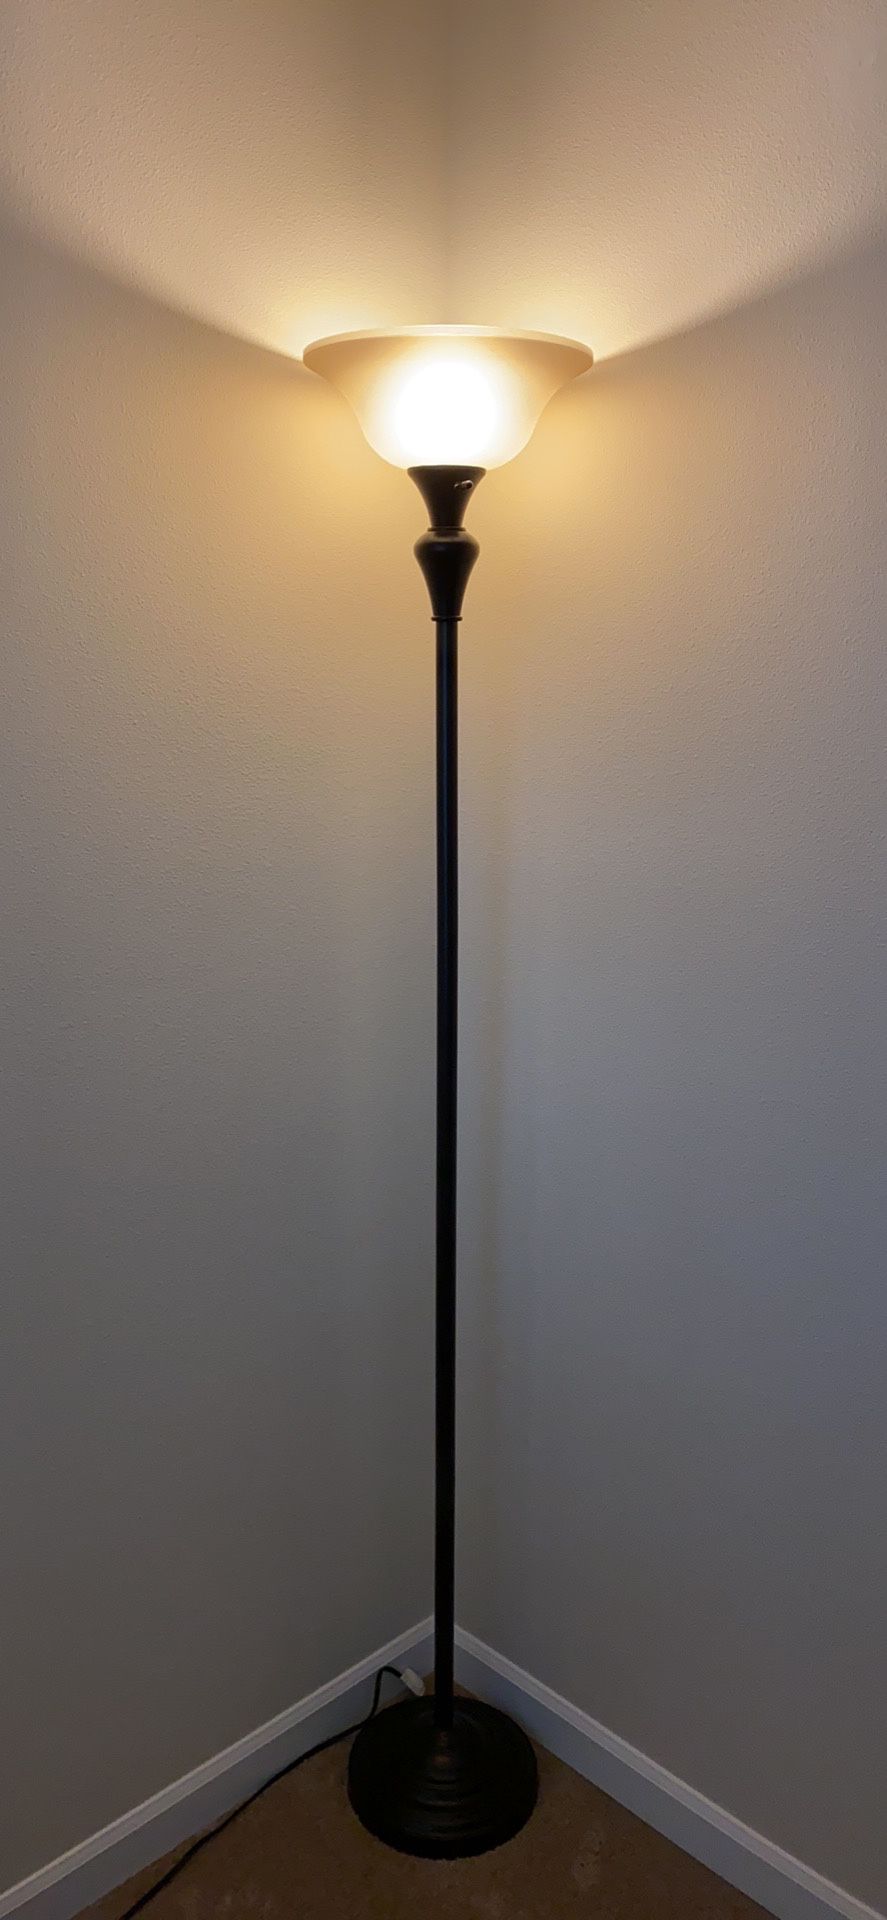 Halogen floor lamp